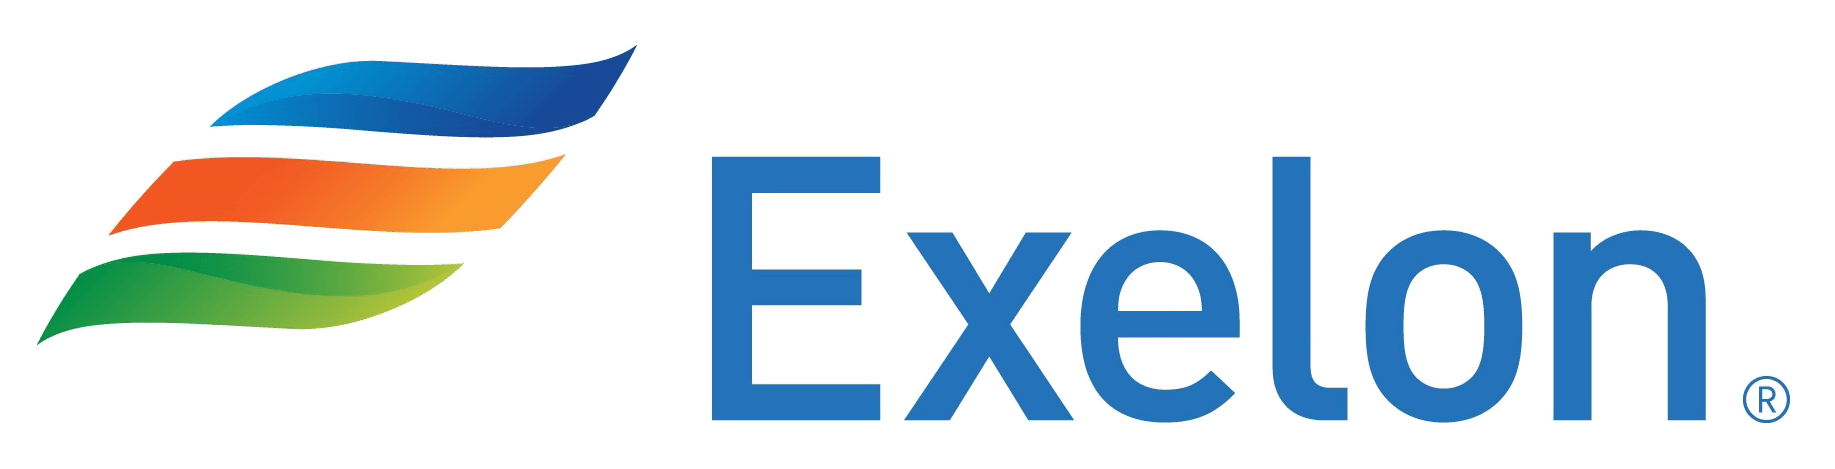 Exelon Corporation Logo - Exelon Logos